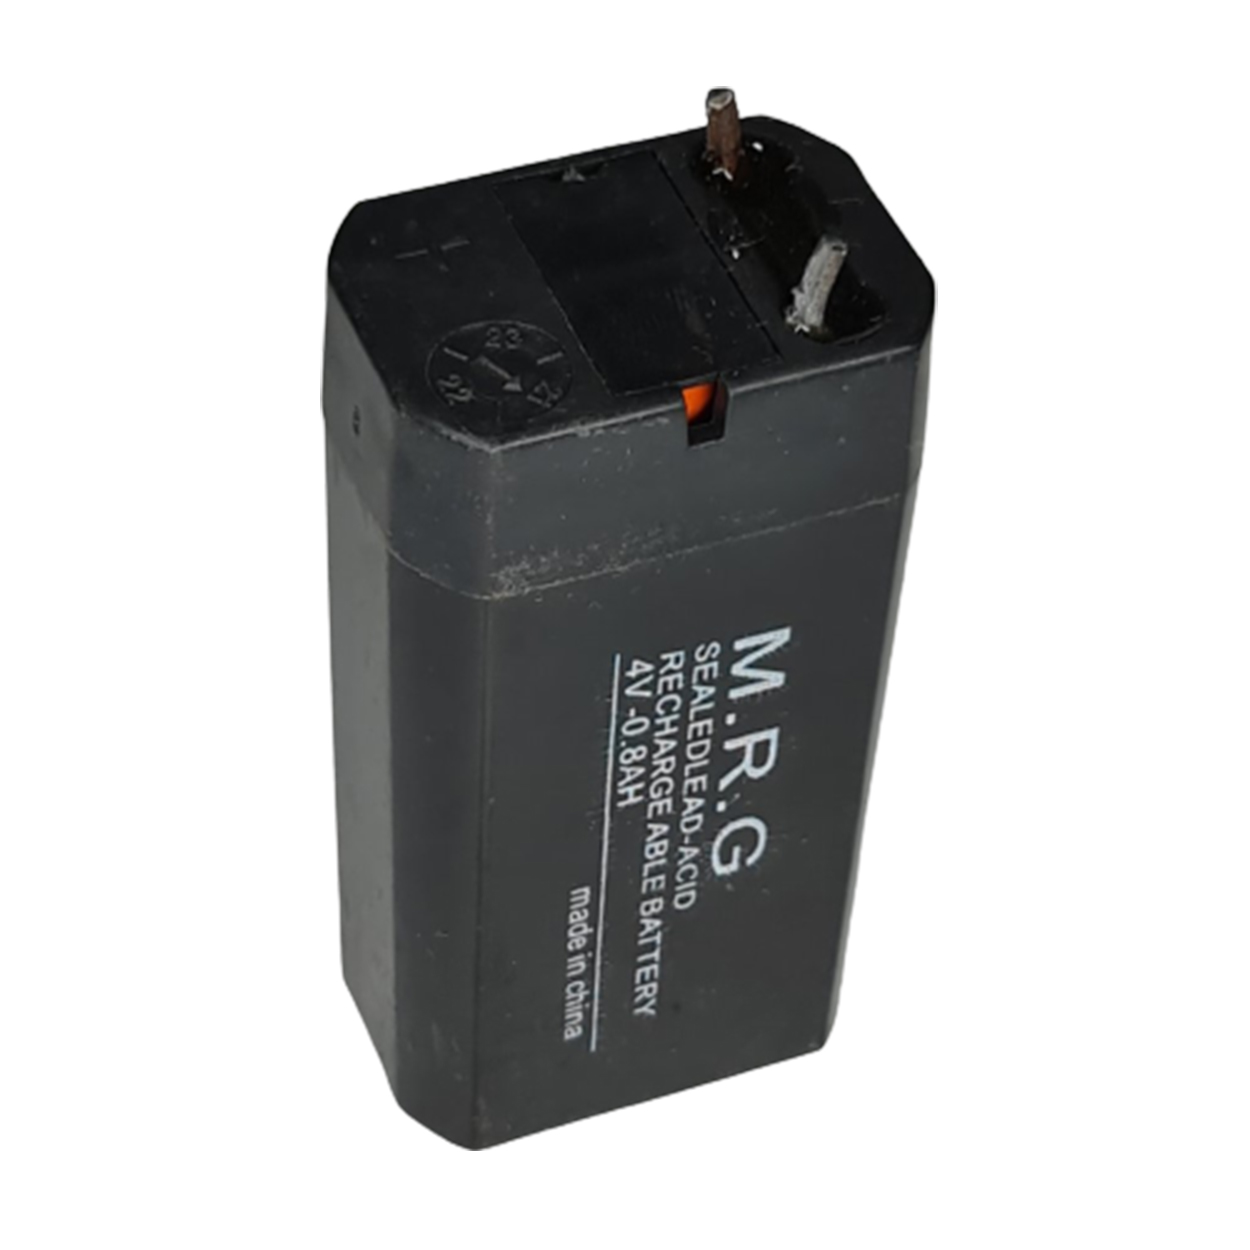 باتری سیلد اسید 4 ولت 0.8 آمپر ام آر جی مدل M-800